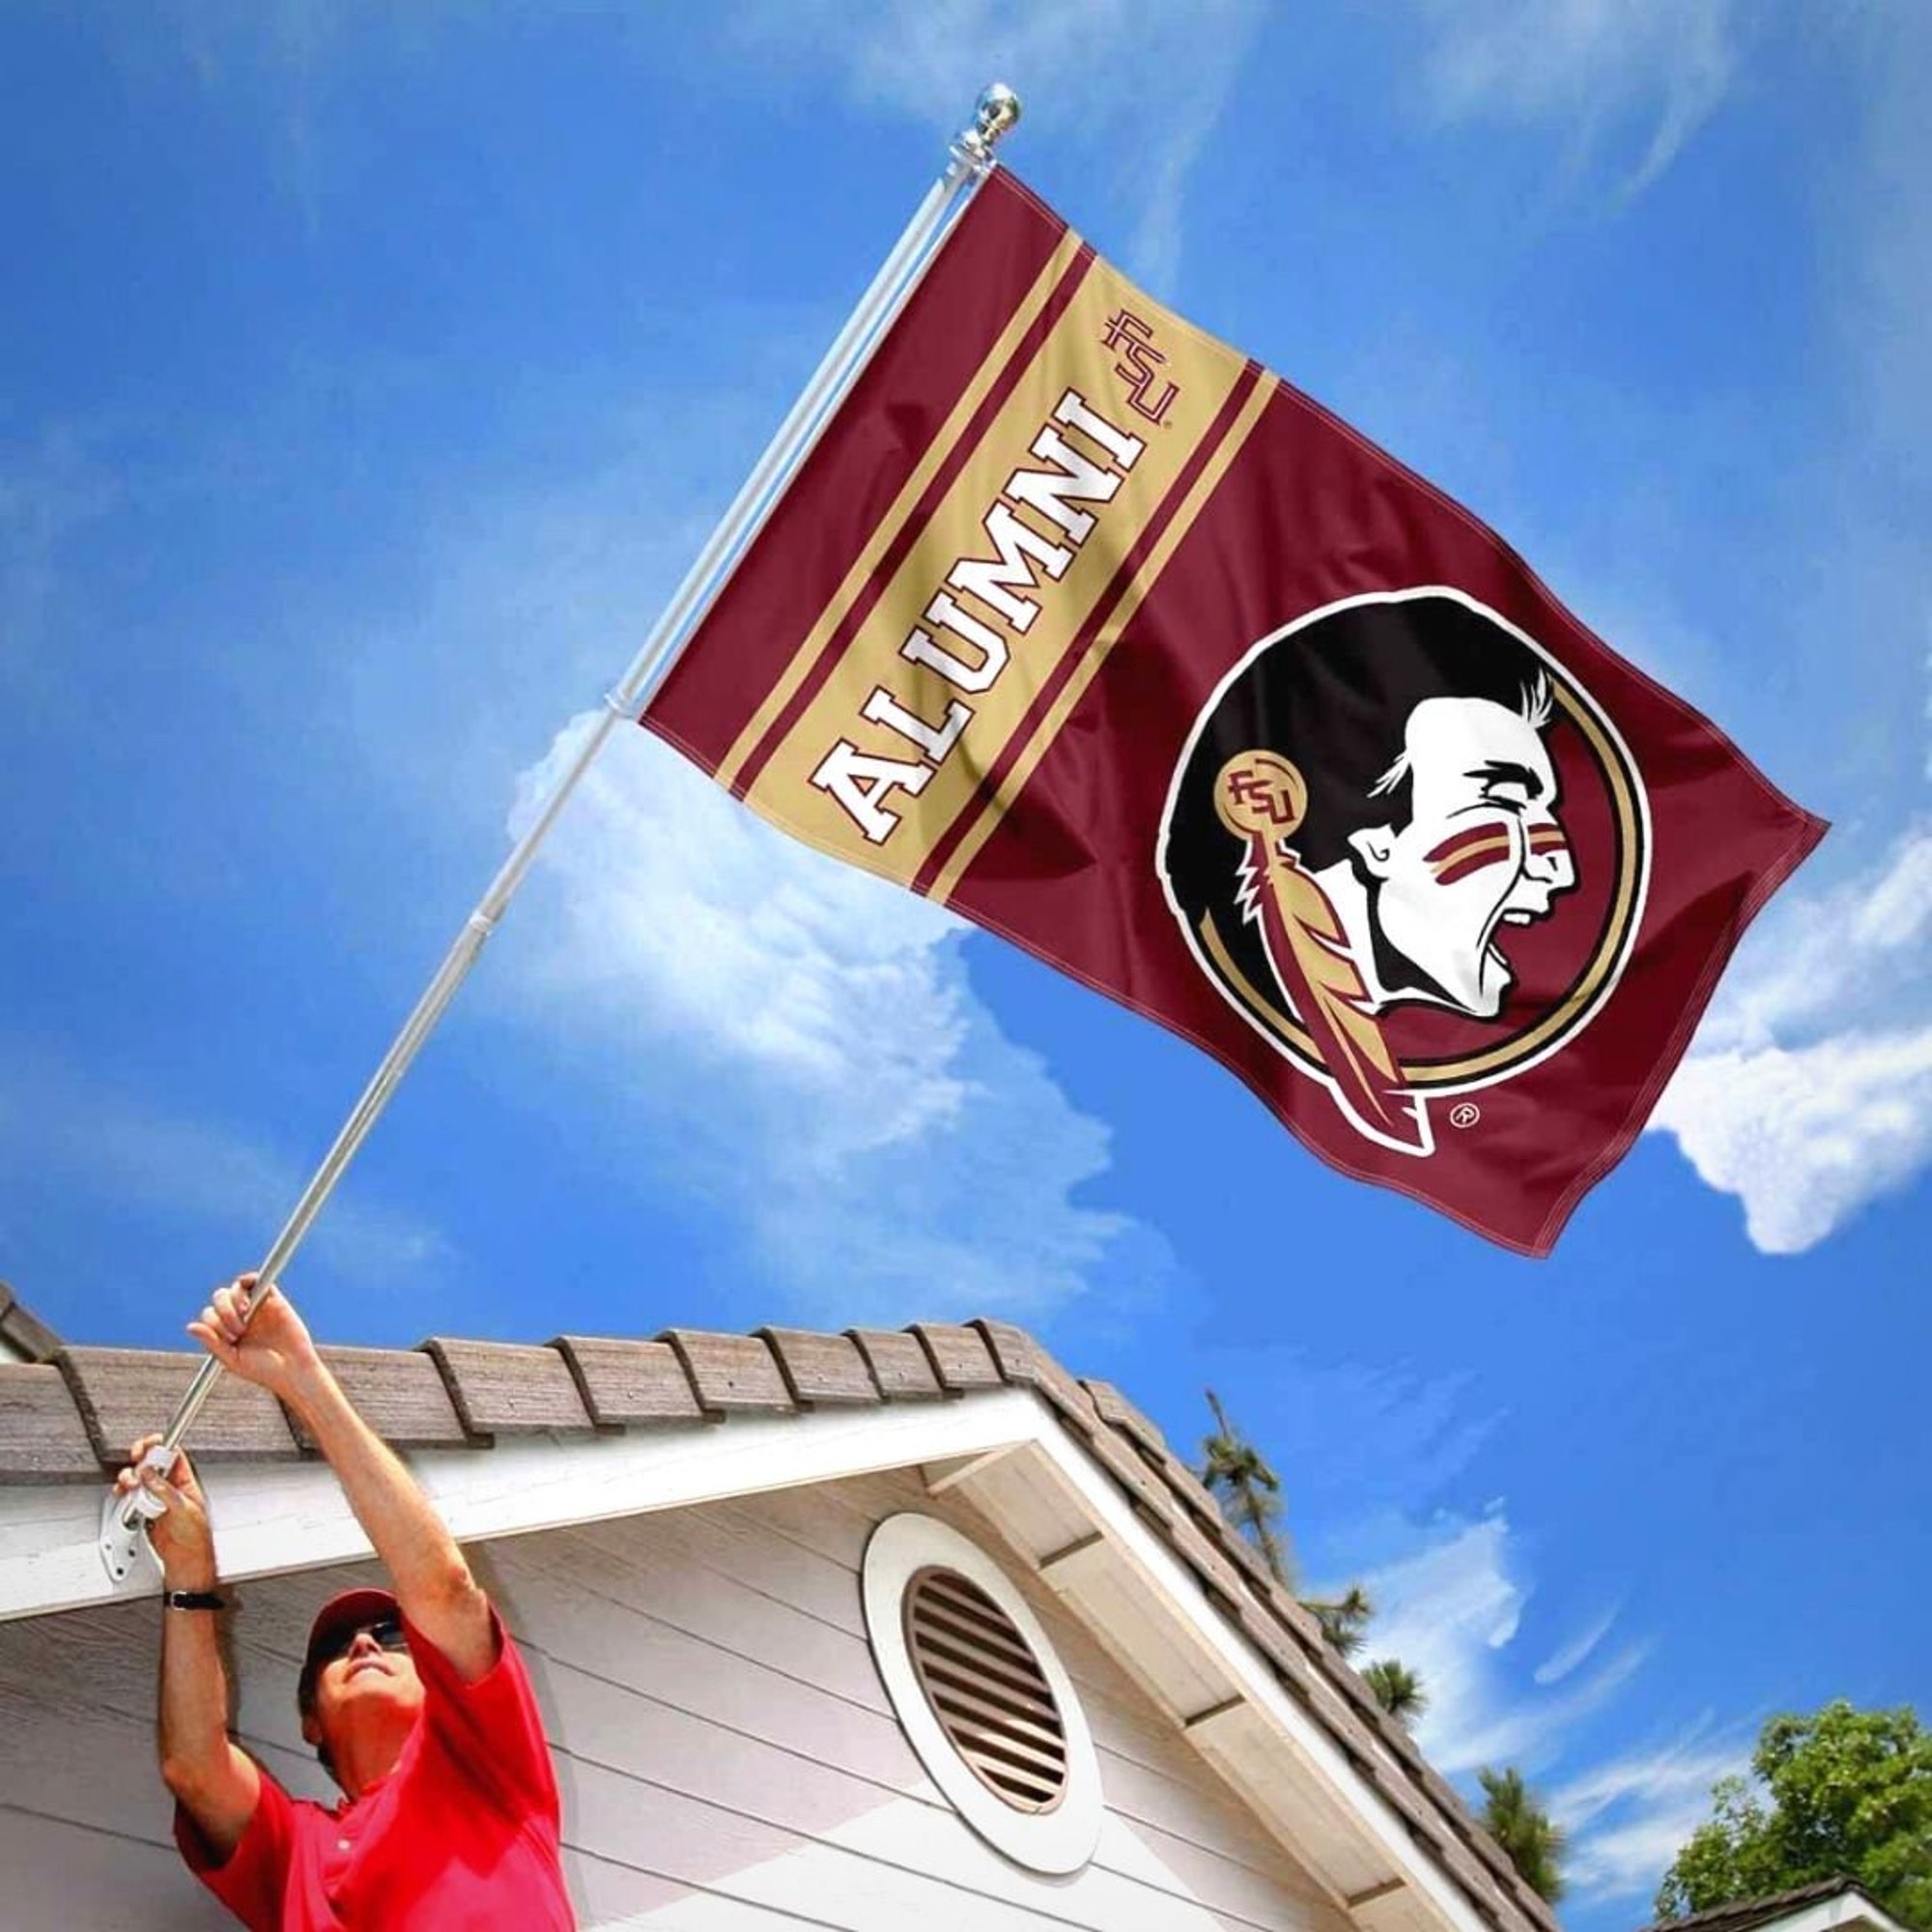 Florida State Seminoles Football Team House Flag